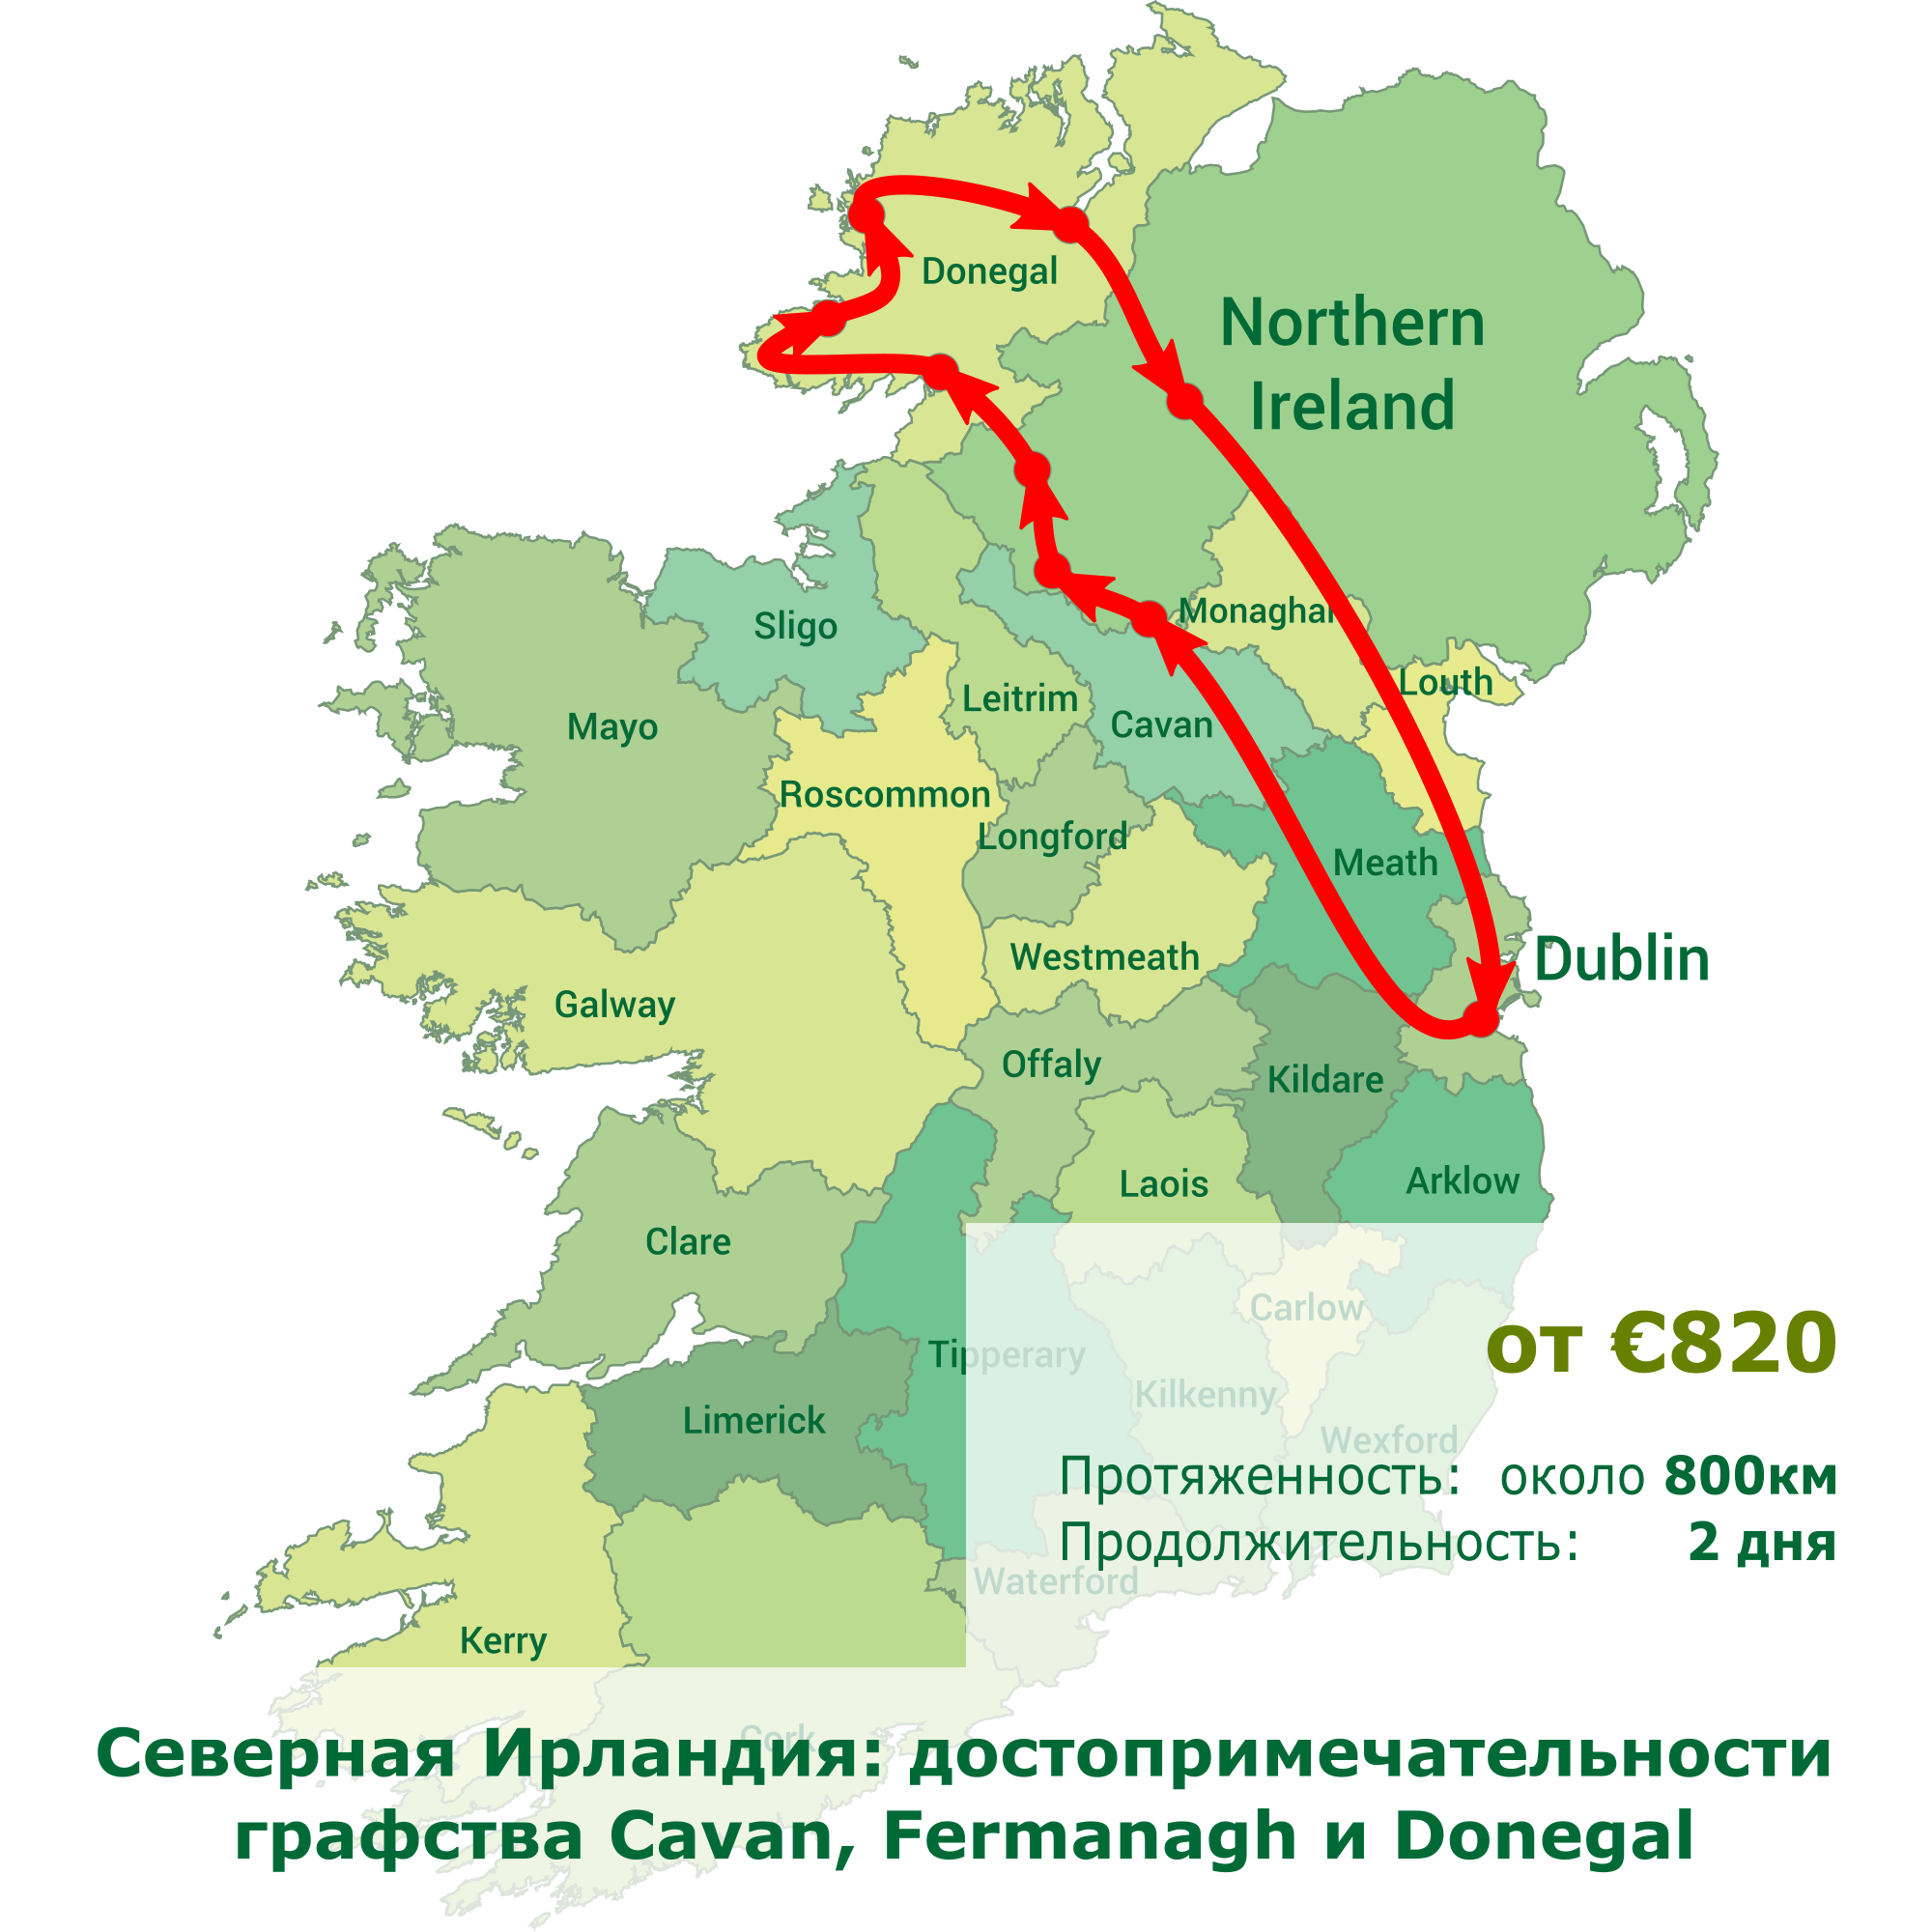 Северная Ирландия: достопримечательности графства Cavan, Fermanagh и Donegal